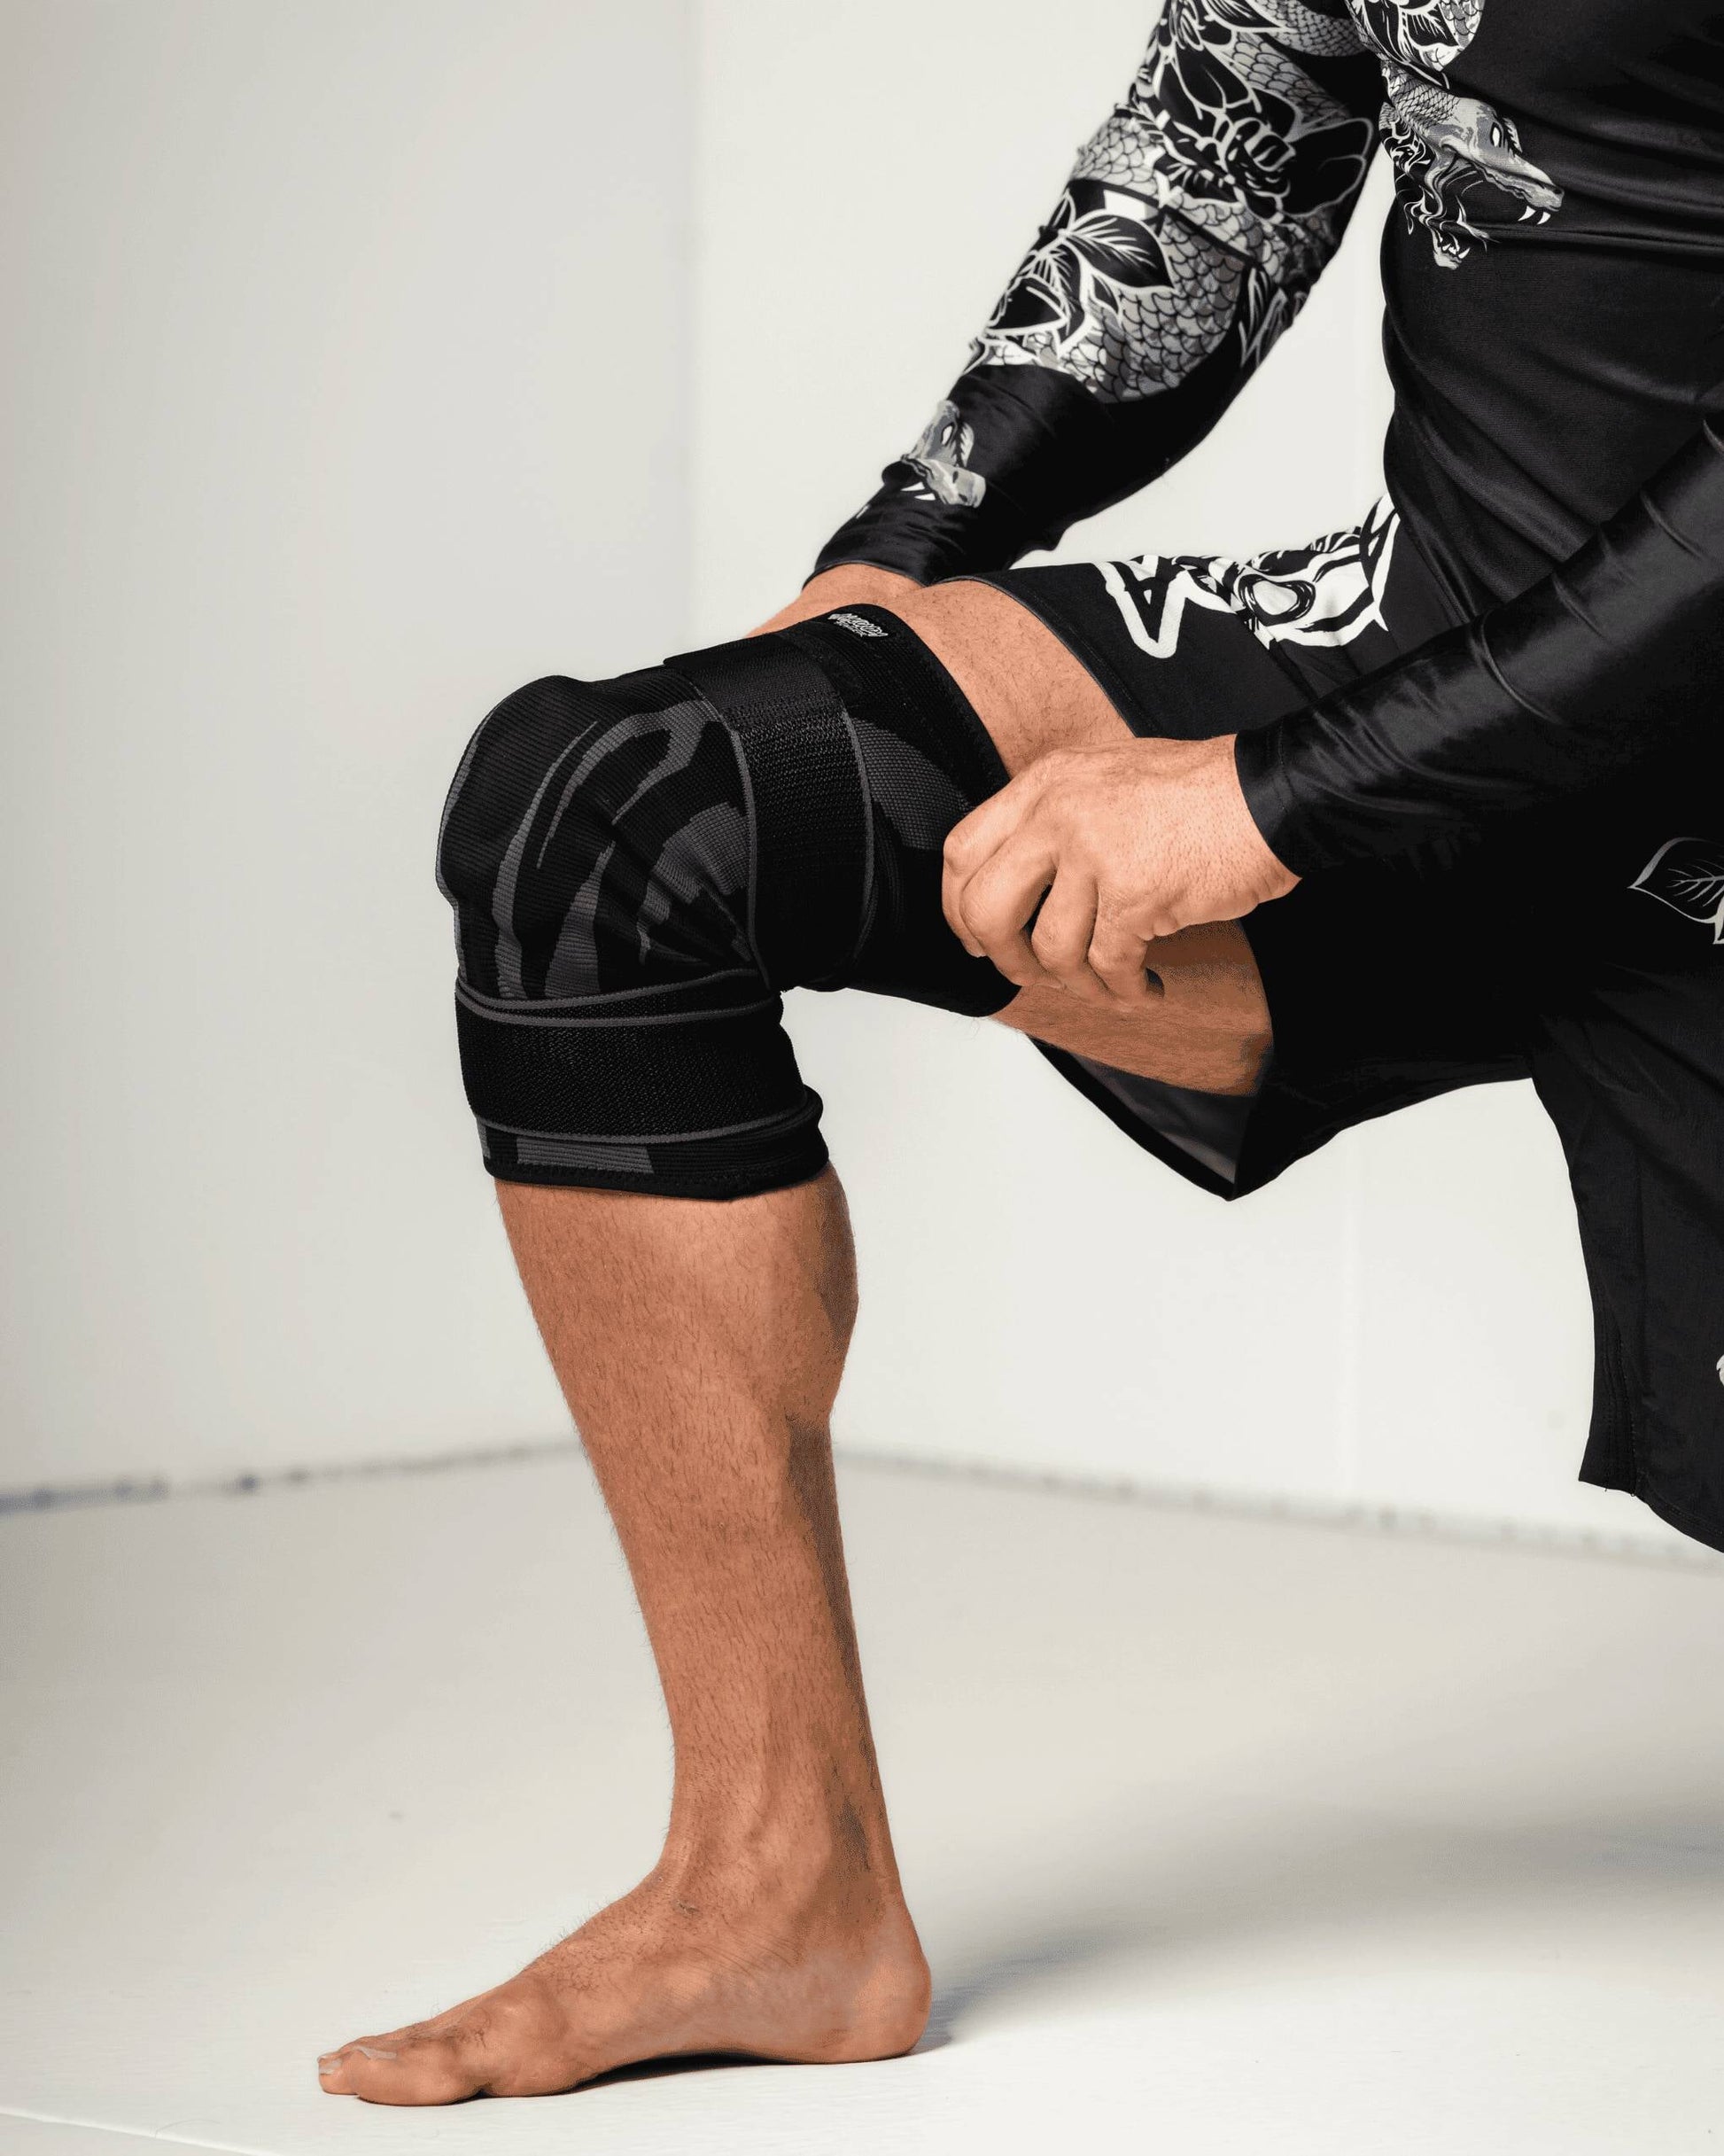 Anaconda Knee Brace: The Jiu Jitsu Knee Brace – anacondafightwear